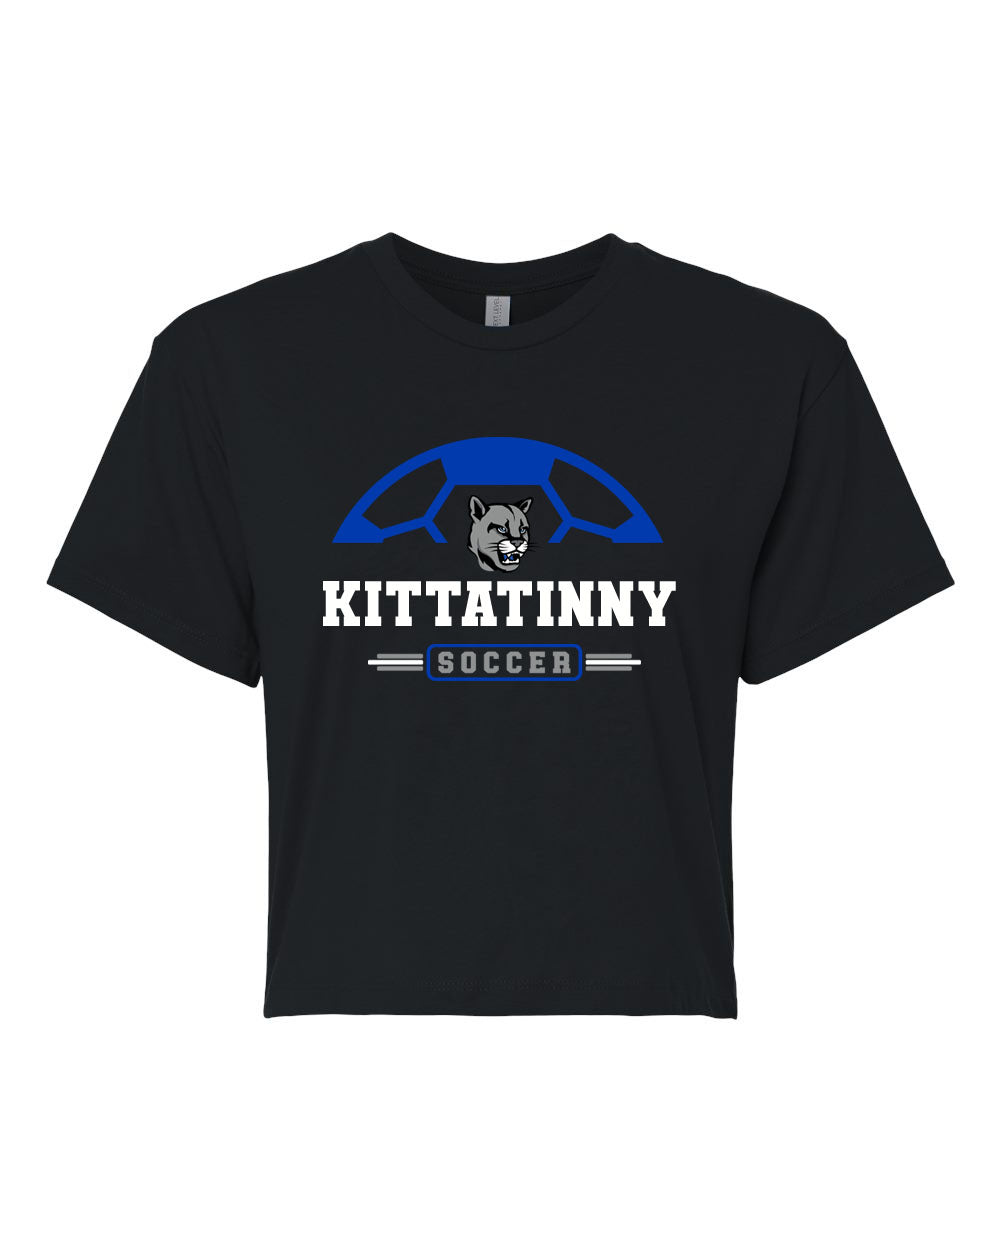 Kittatinny Soccer Design 2 Crop Top